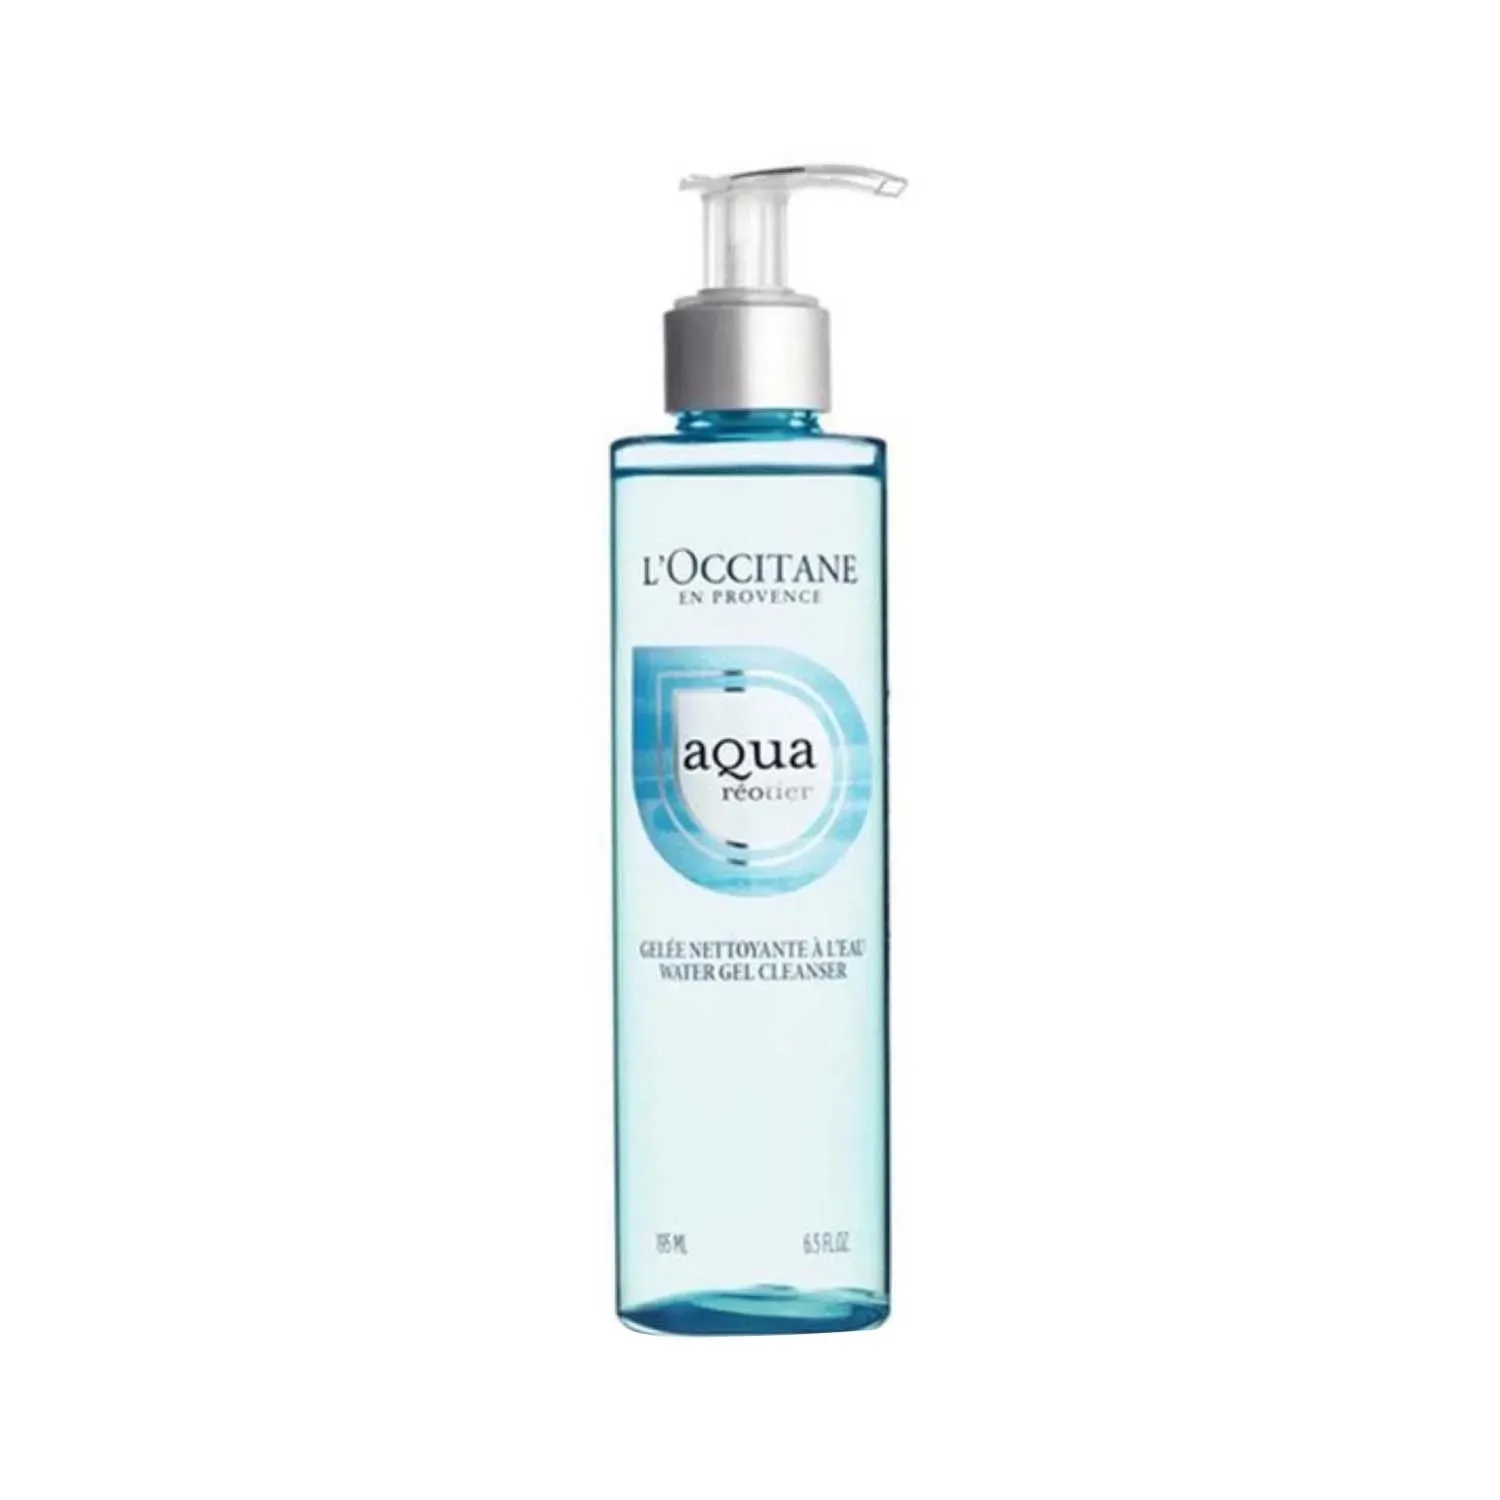 L'occitane | L'occitane Aqua Gel Cleanser - (195ml)